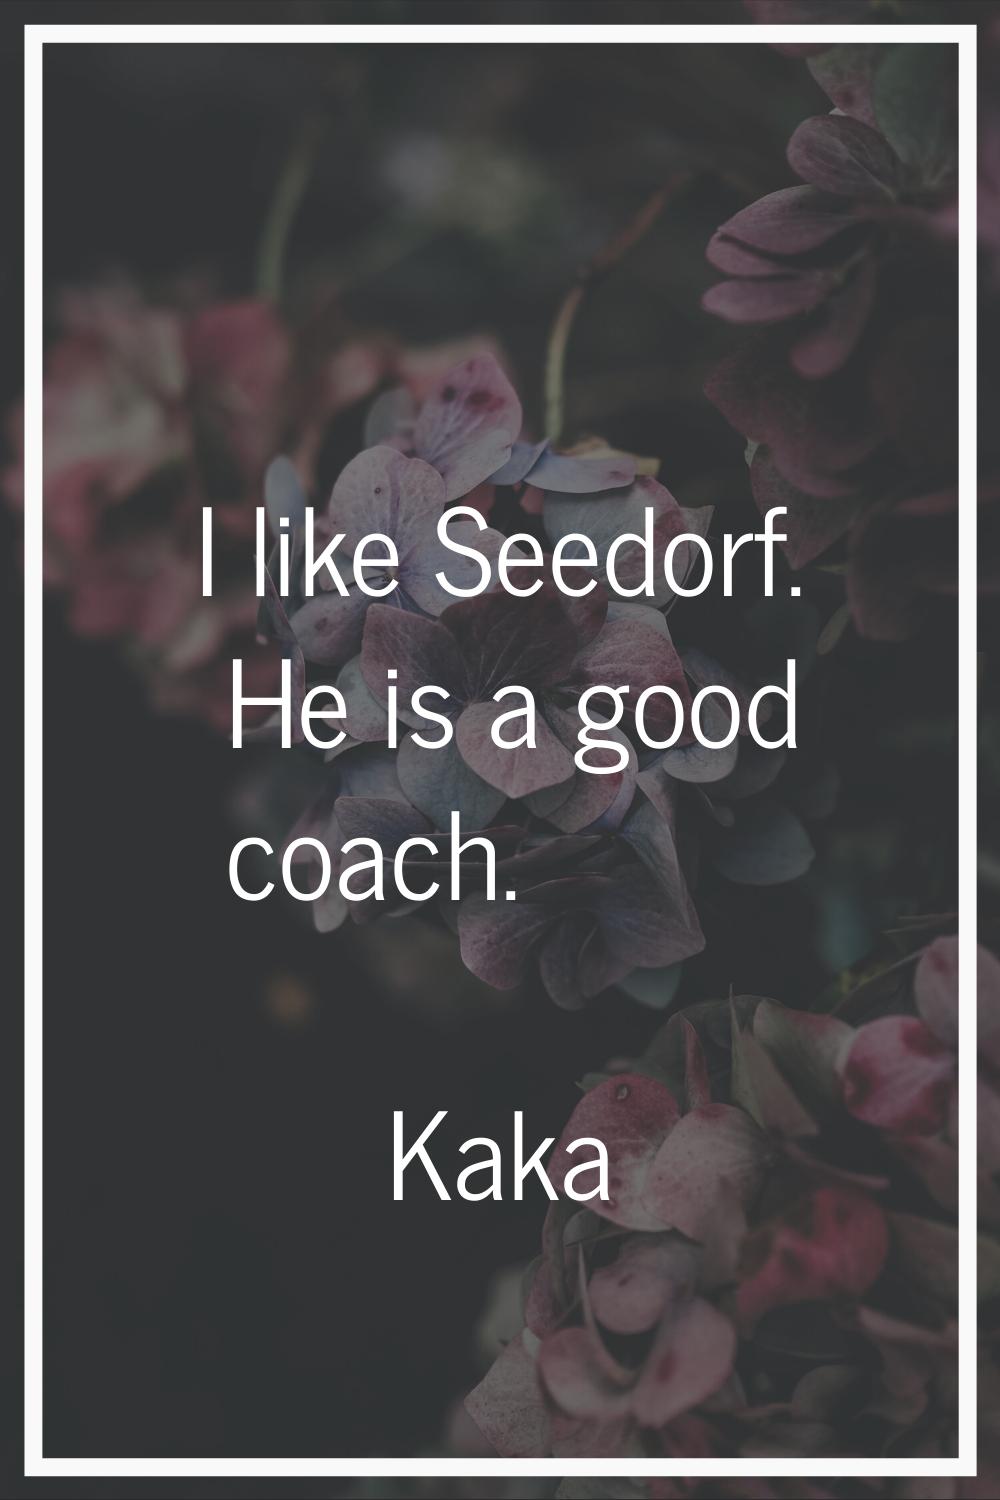 I like Seedorf. He is a good coach.